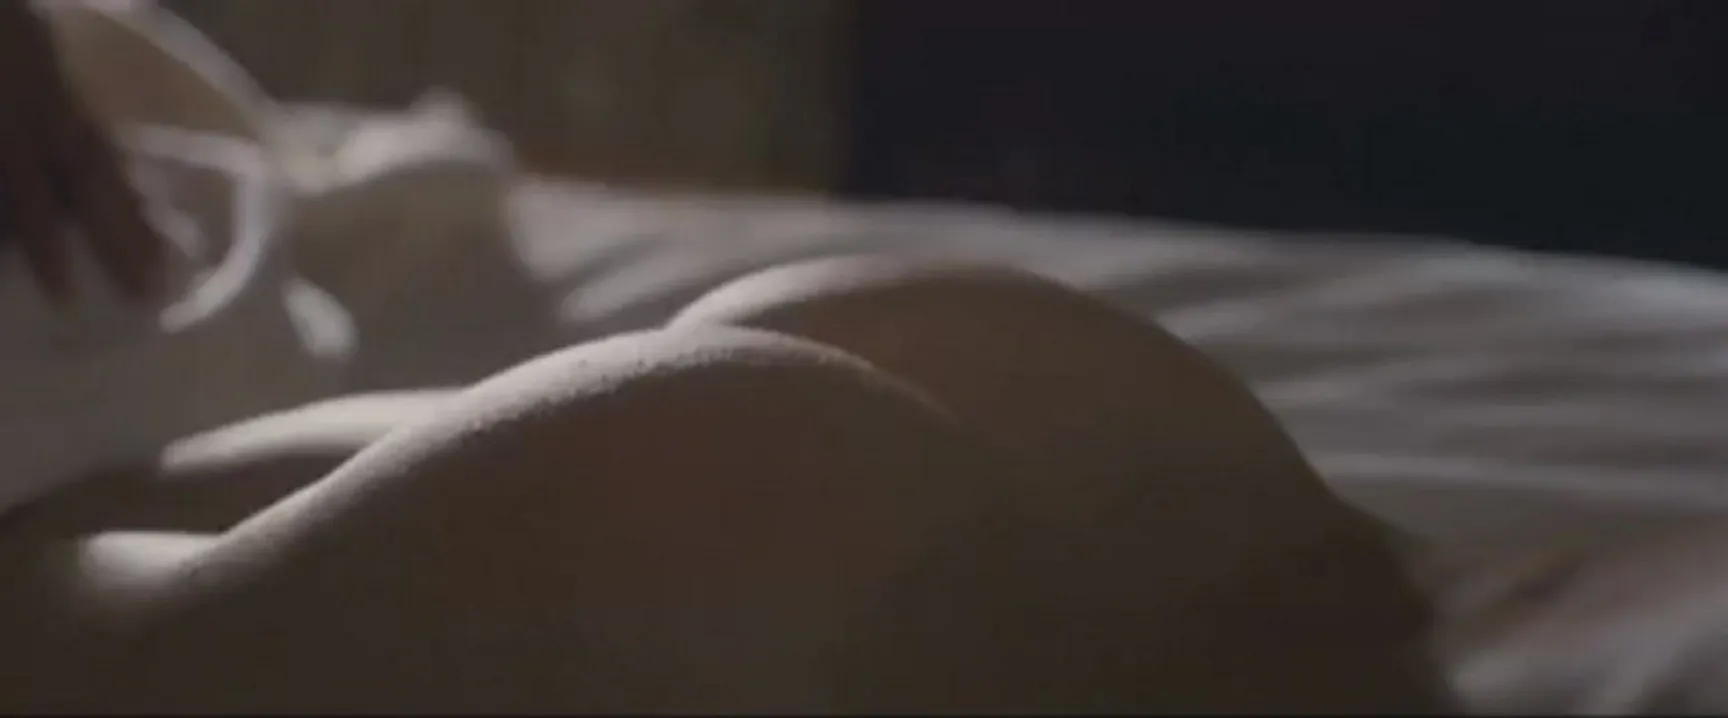 Забытый сюжет Кейт Хадсон о шлепании по заднице в фильме «Убийца внутри меня», 2010 г.